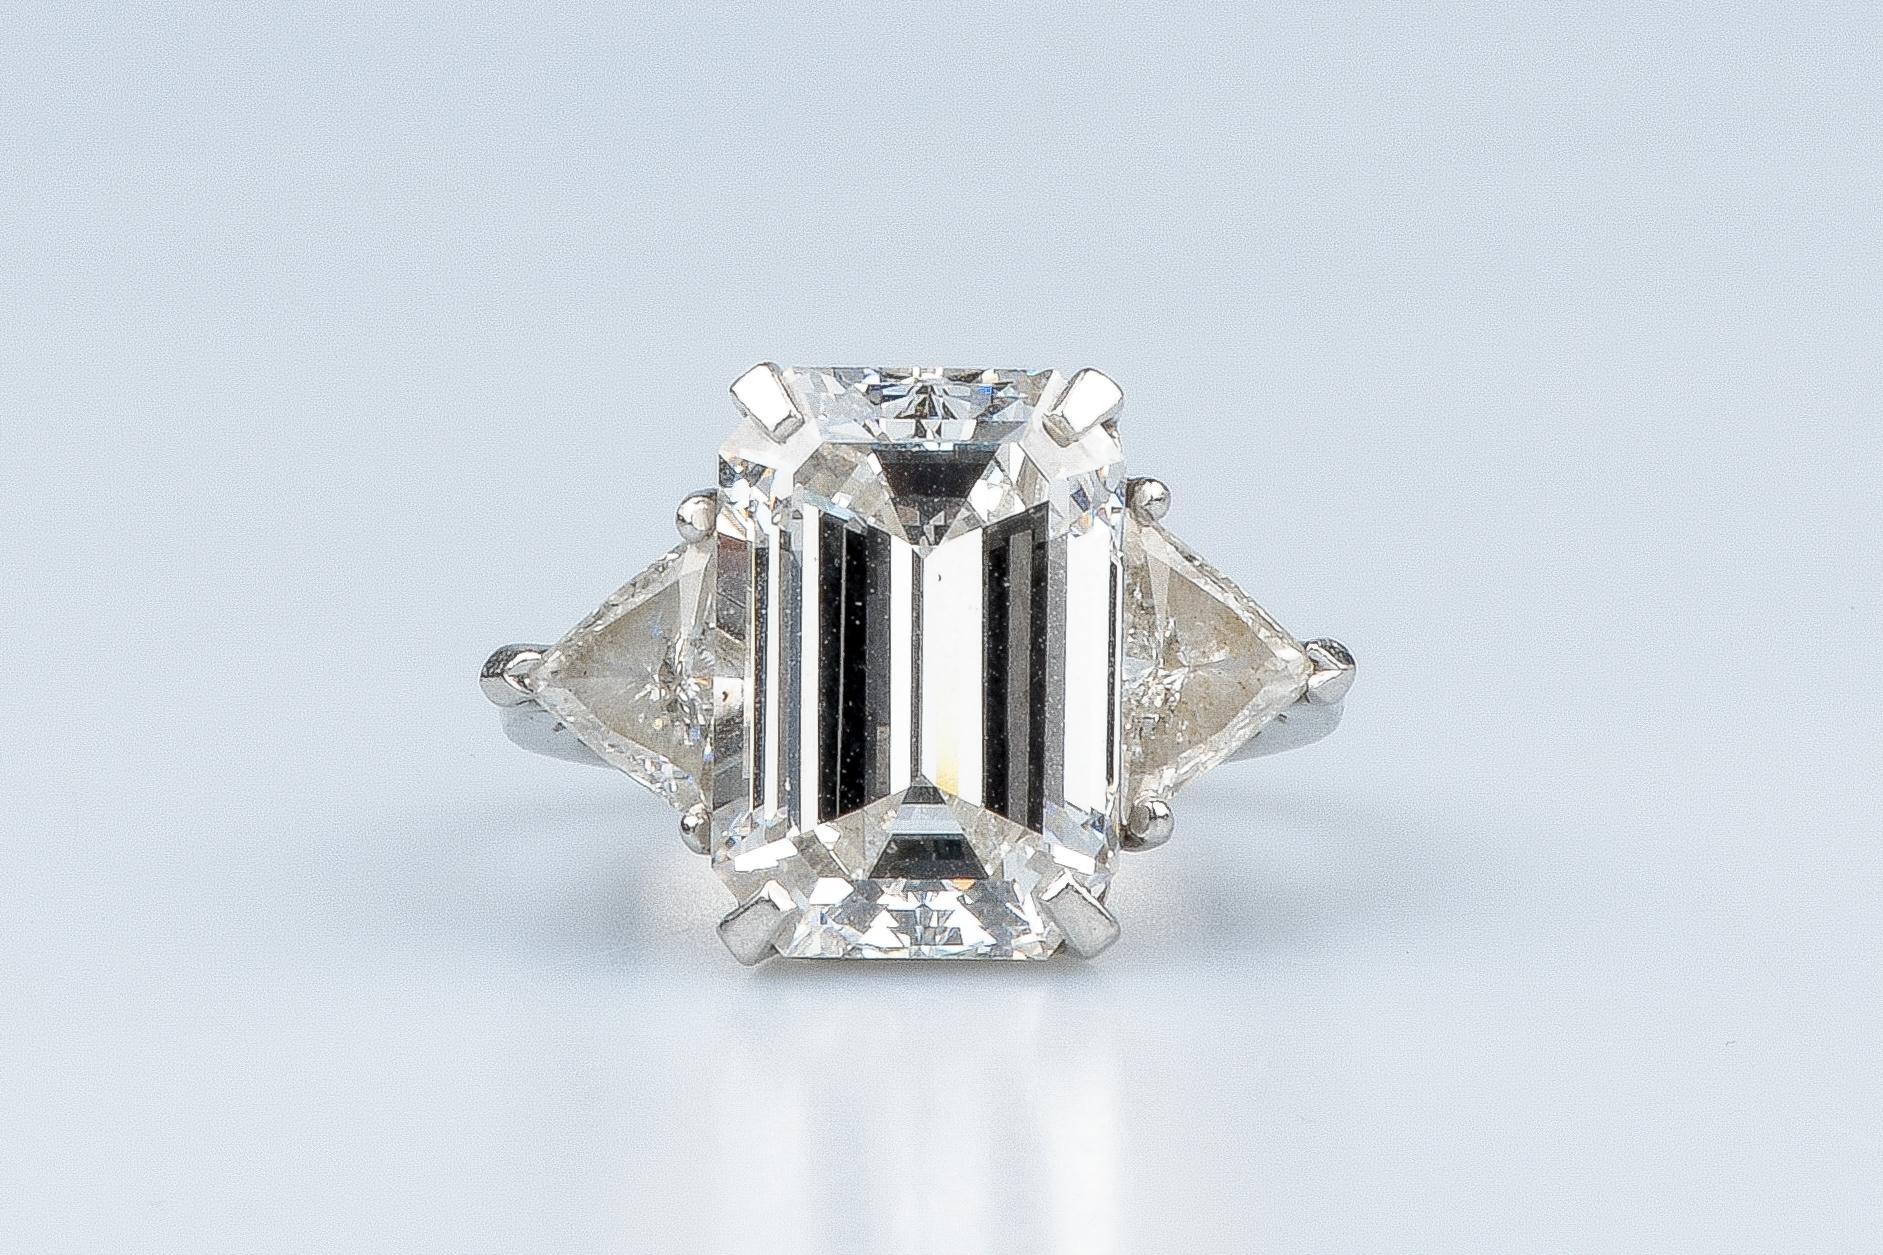 Emerald Cut WGI certified 10.70 carat emerald cut diamond - 1.40 carat trillion cut diamonds For Sale